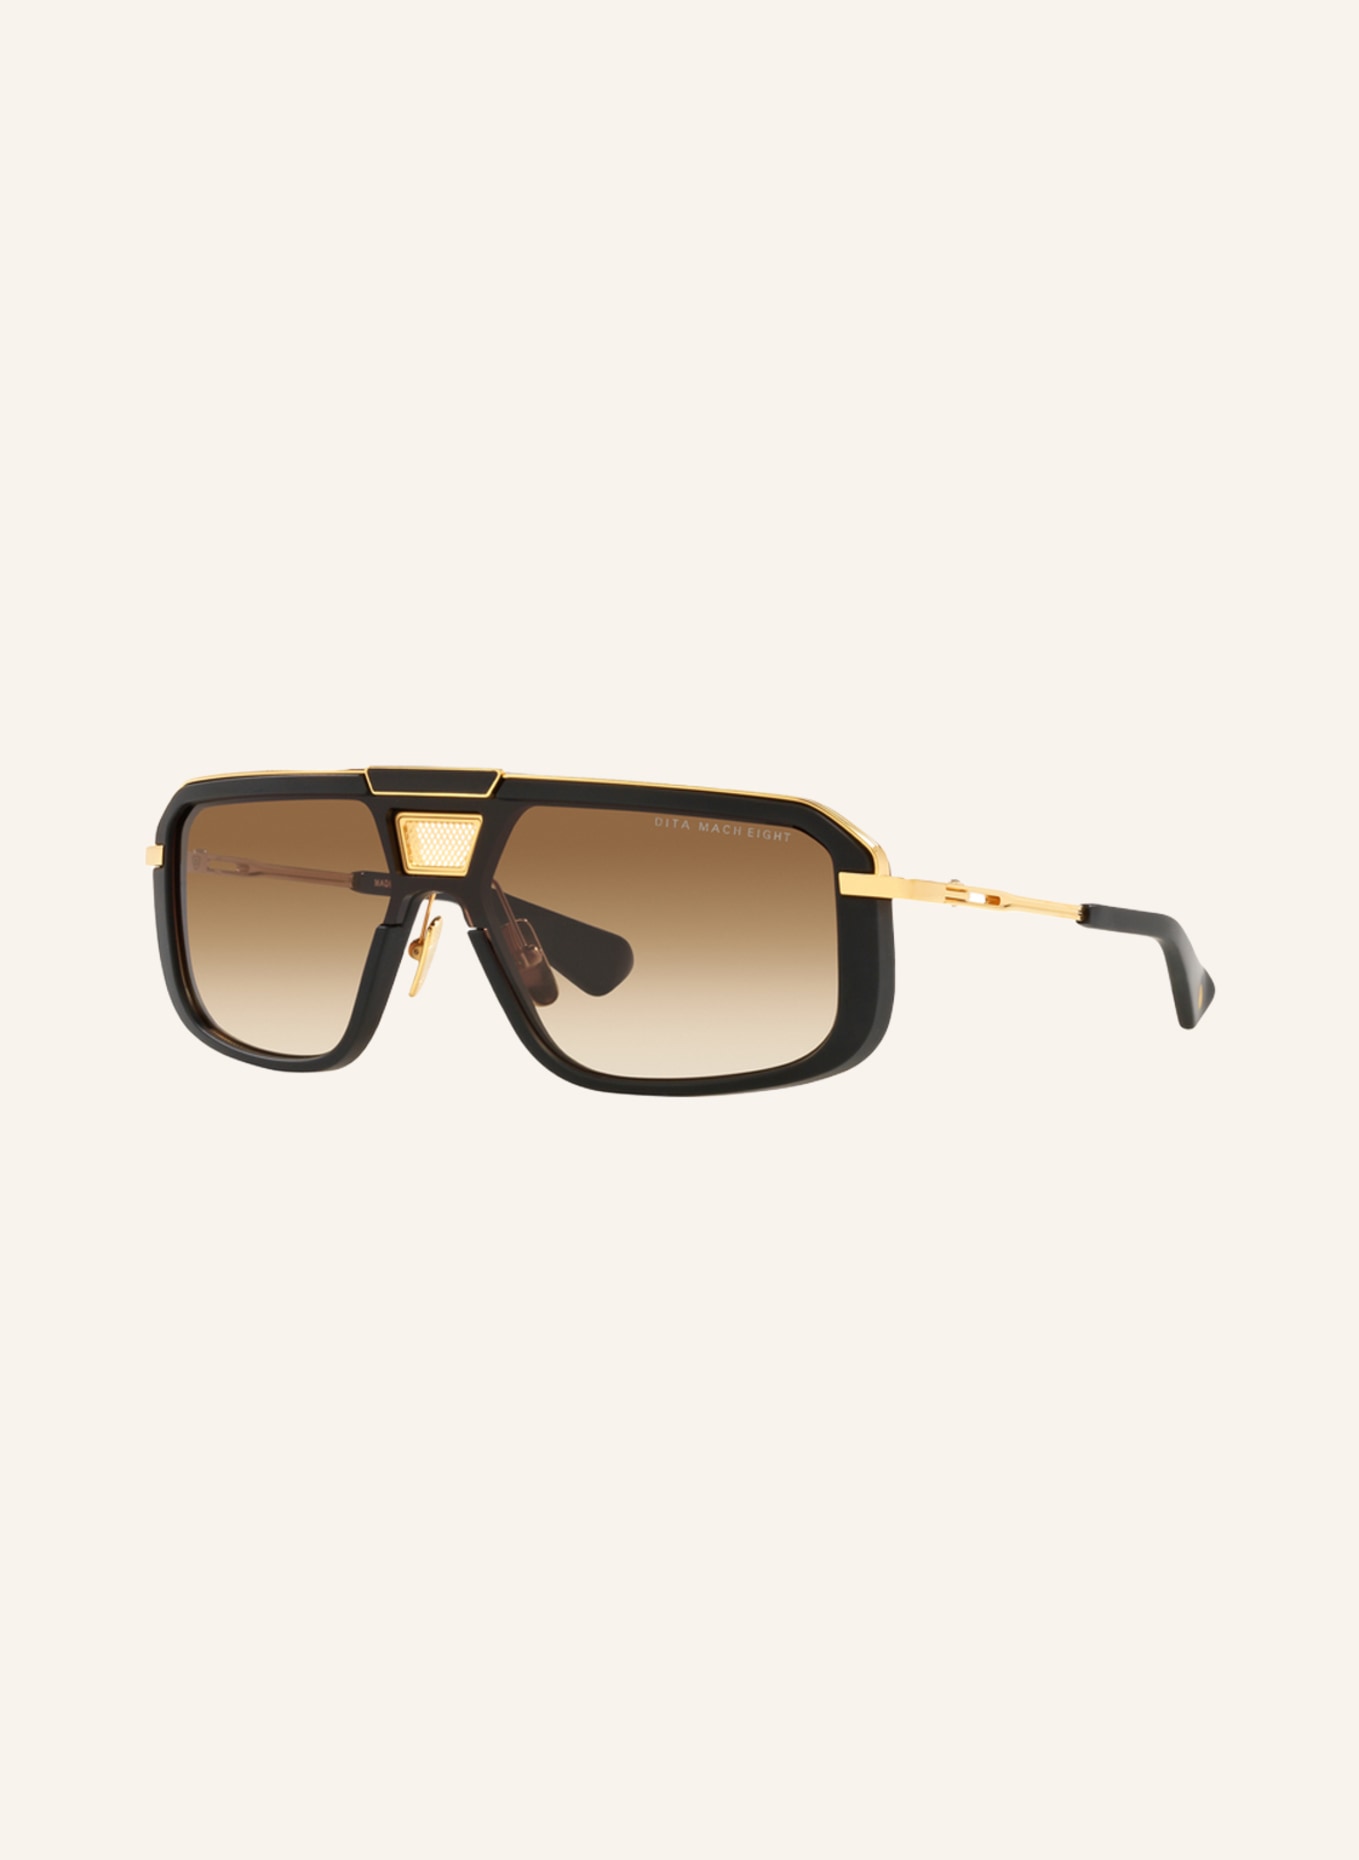 DITA Sunglasses MACH EIGHT, Color: 1220D4 - BLACK MATTE/LIGHT BROWN GRADIENT (Image 1)